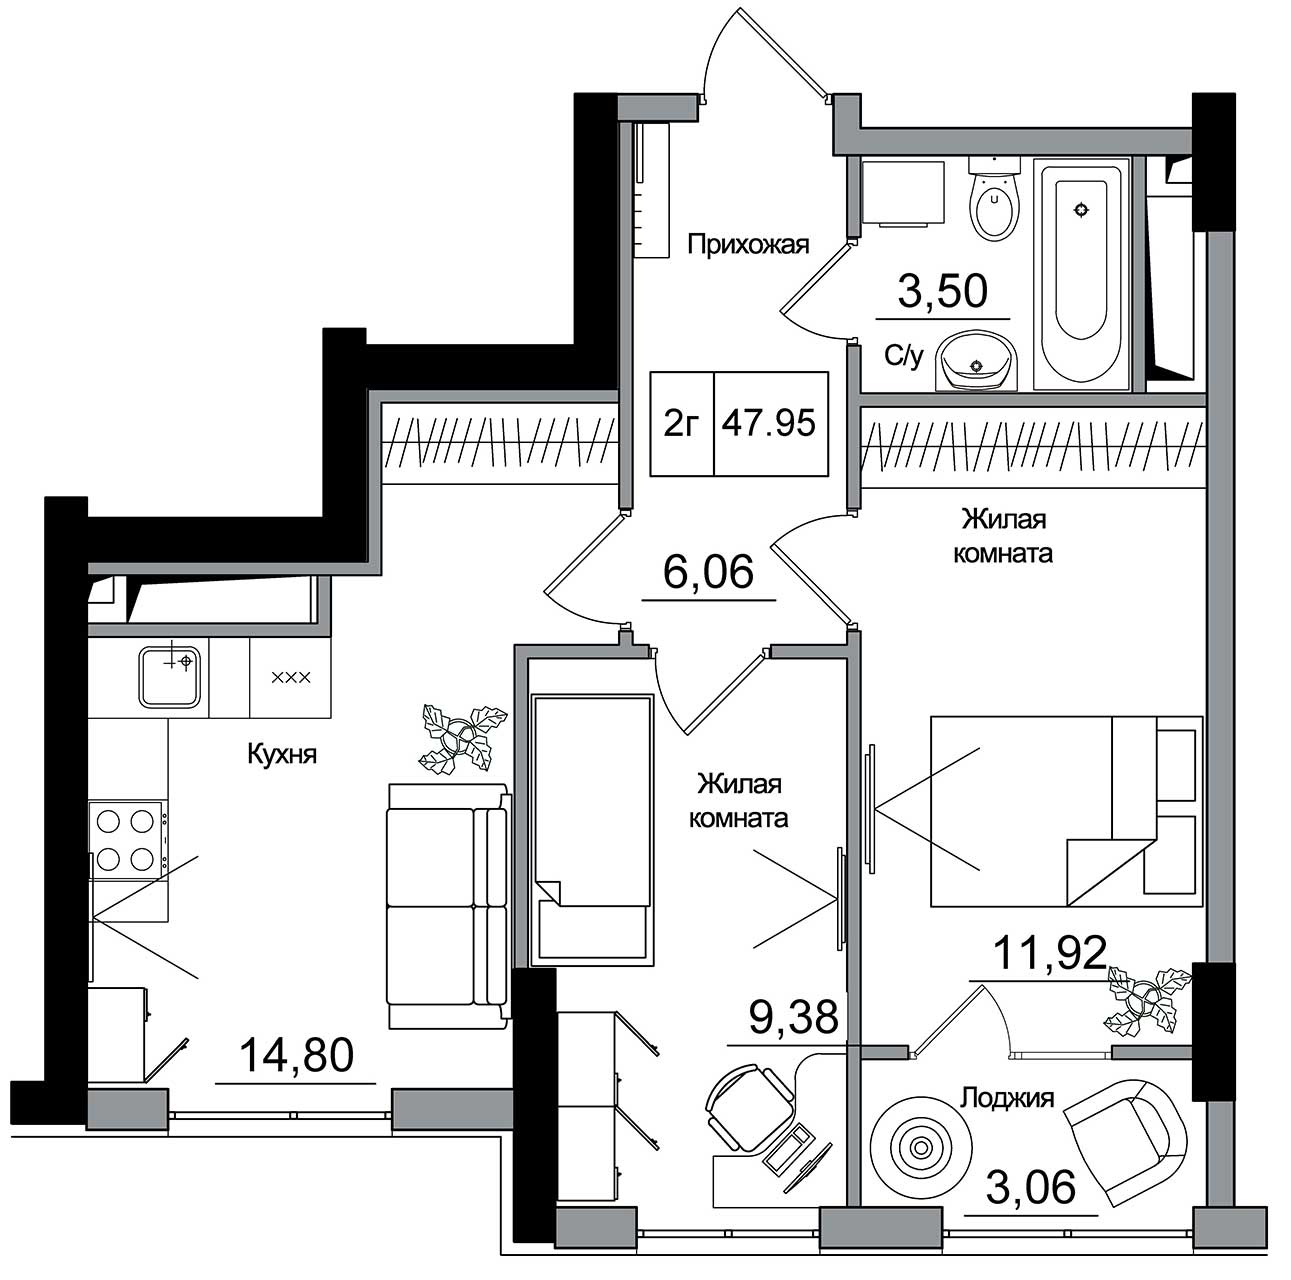 Планировка 2-к квартира площей 47.95м2, AB-16-04/00014.